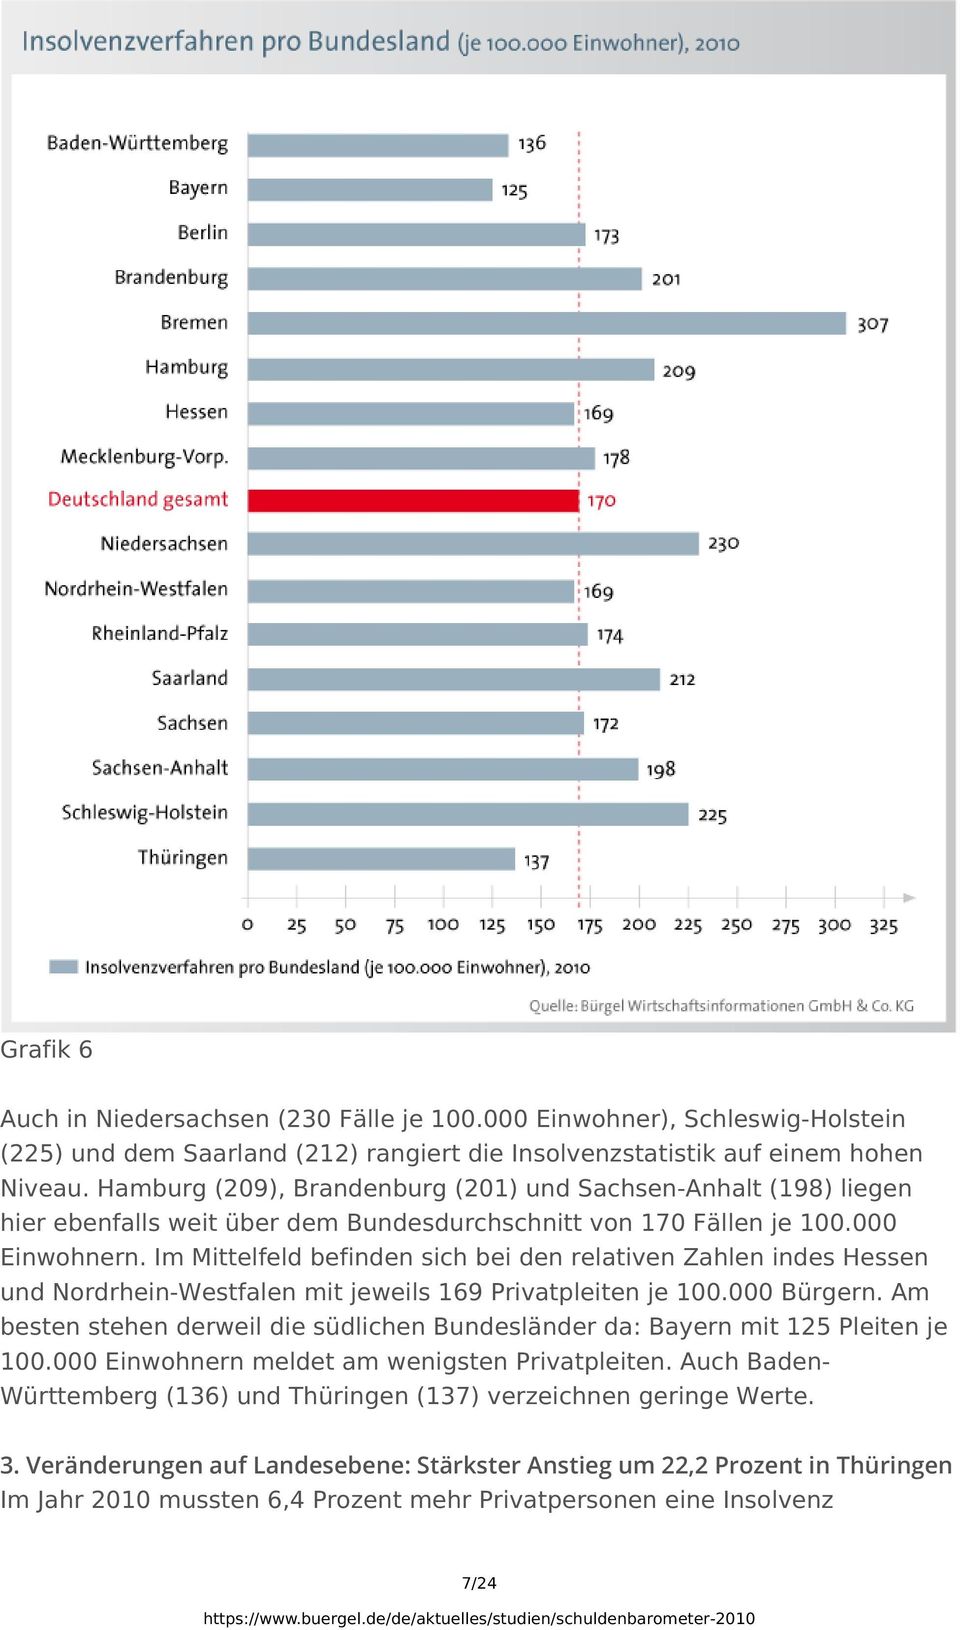 Im Mittelfeld befinden sich bei den relativen Zahlen indes Hessen und Nordrhein-Westfalen mit jeweils 169 Privatpleiten je 100.000 Bürgern.